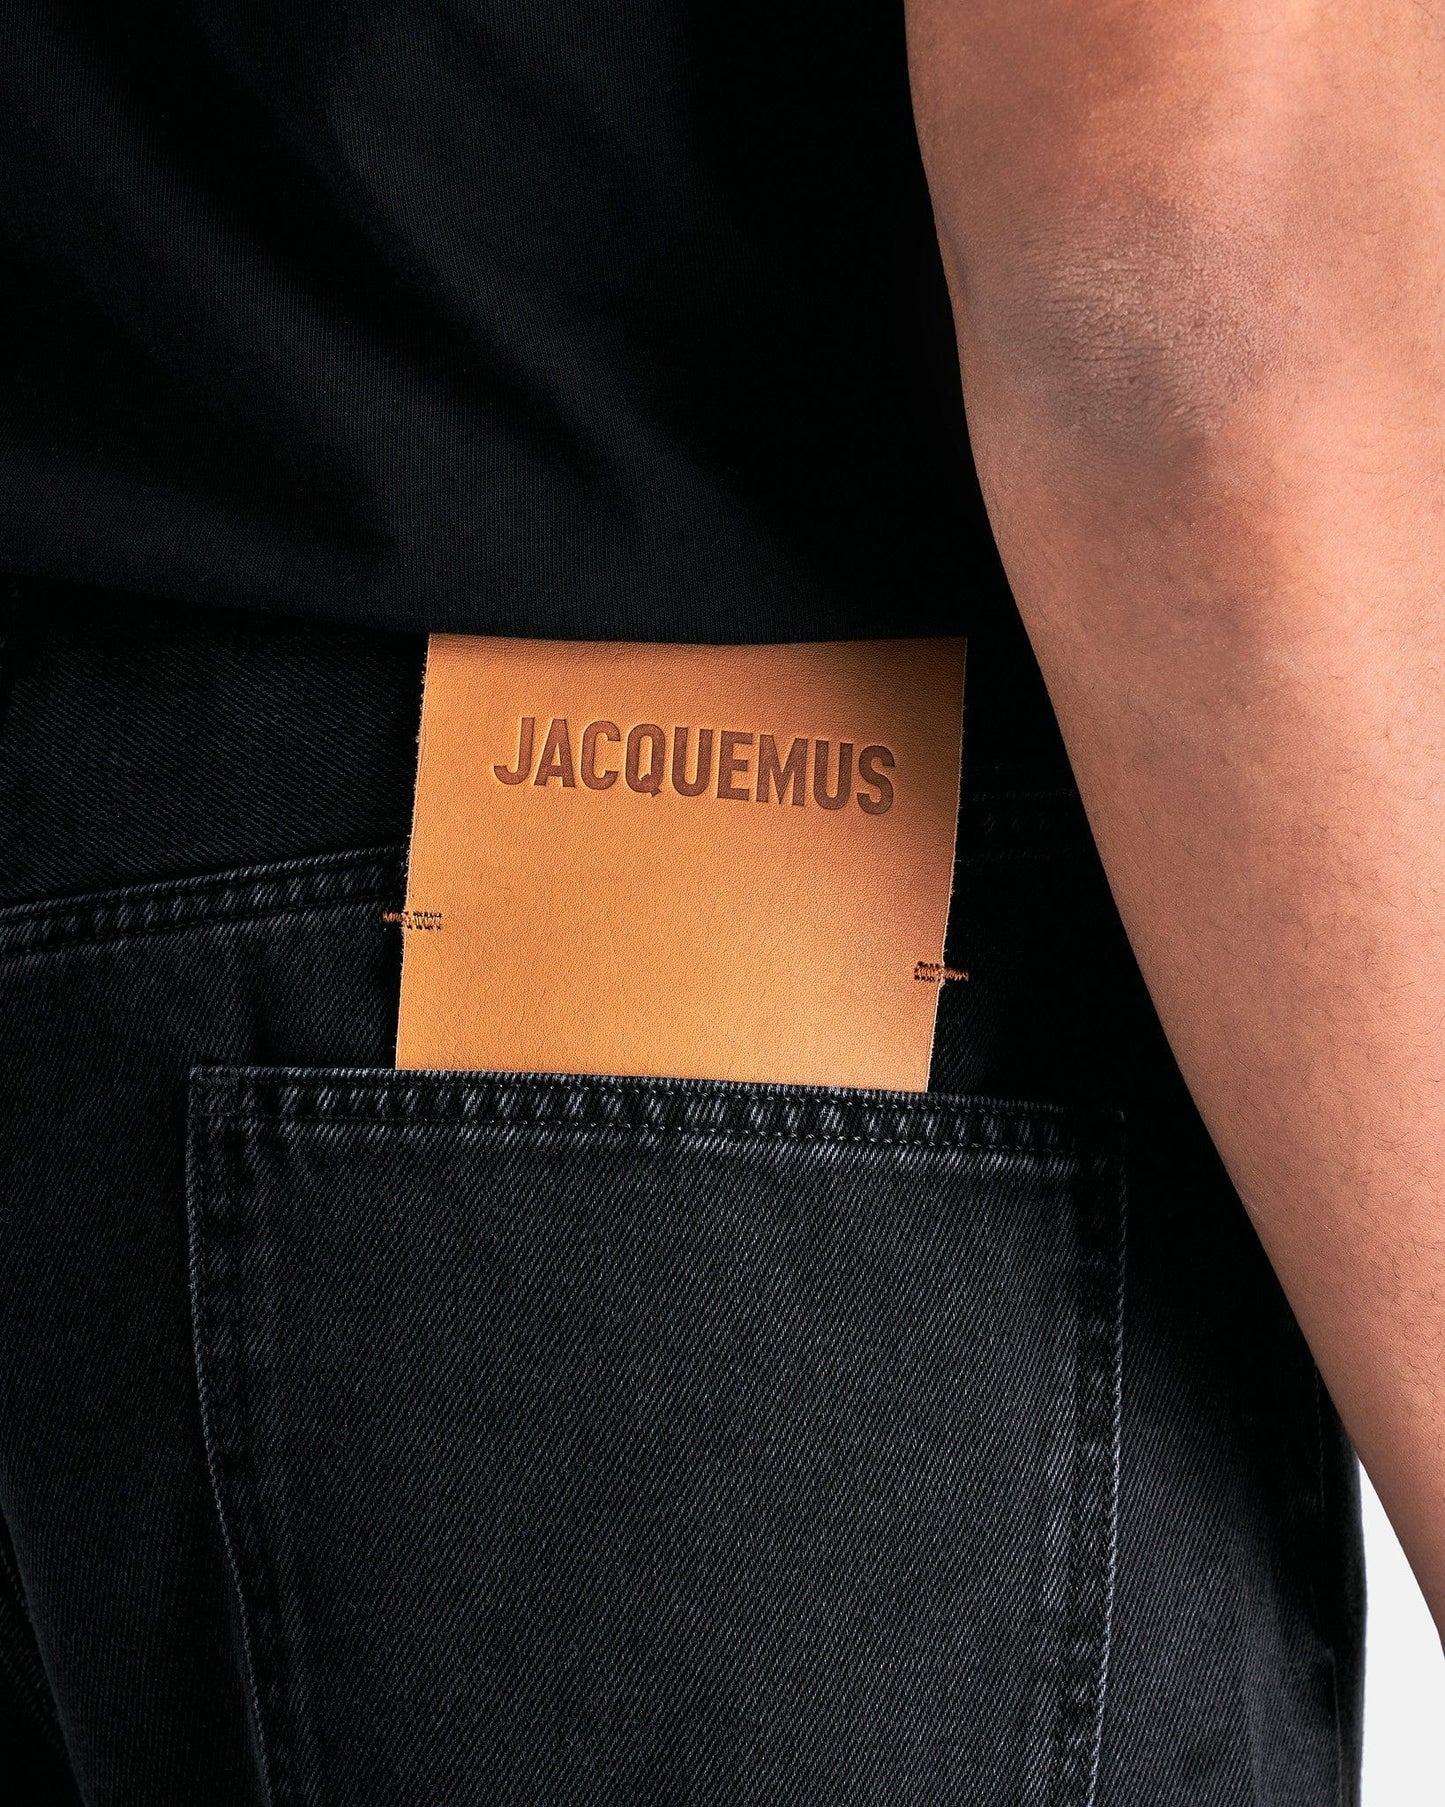 Jacquemus Men's Jeans Le De Nimes Droit in Black